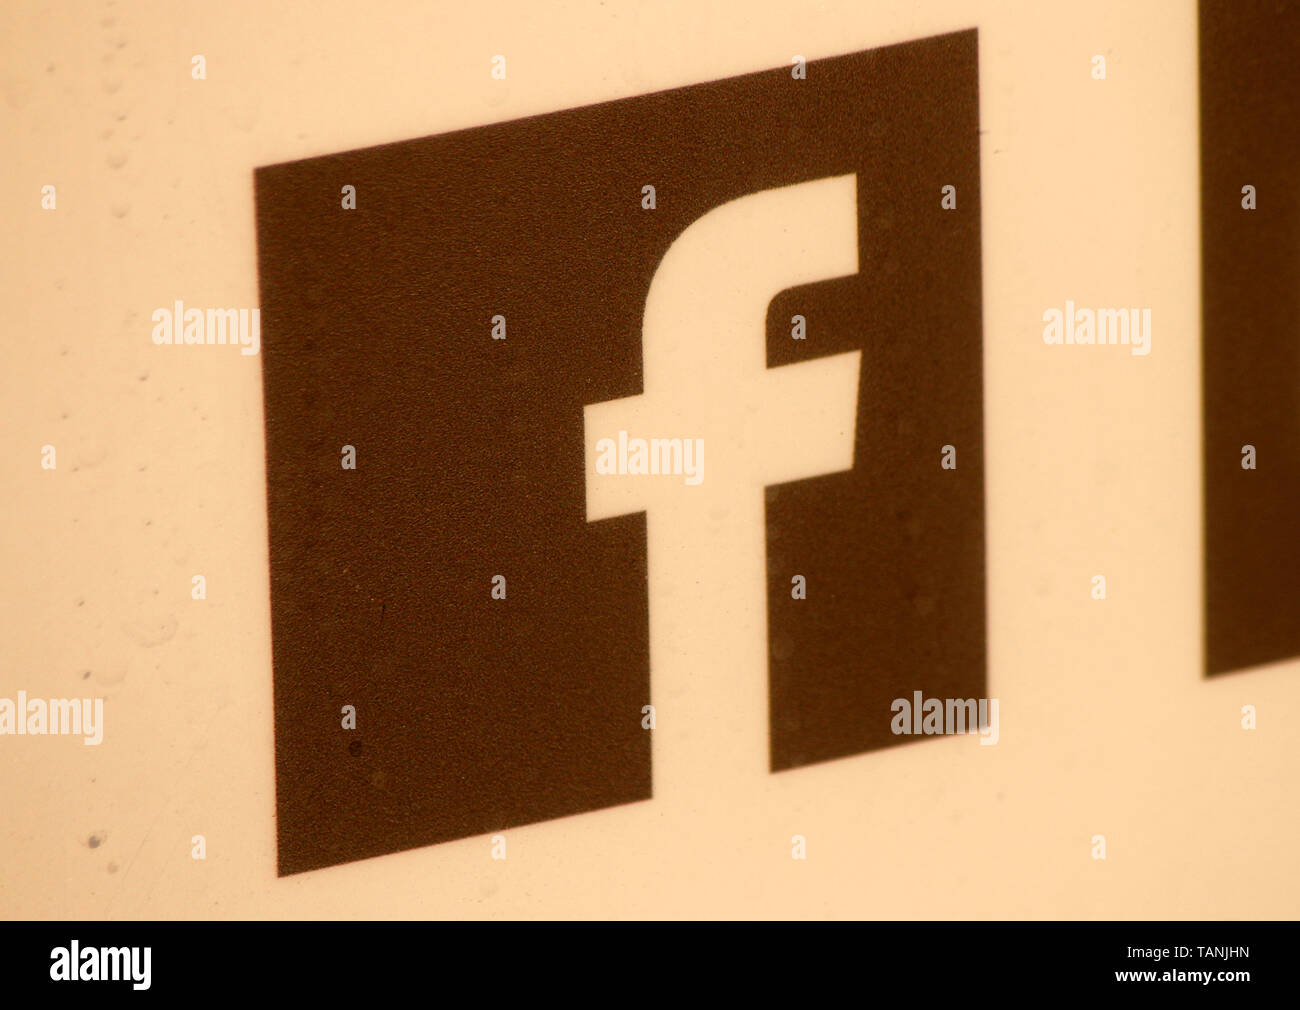 Das Logo der Marke/das Logo der Marke "Facebook". Stockfoto